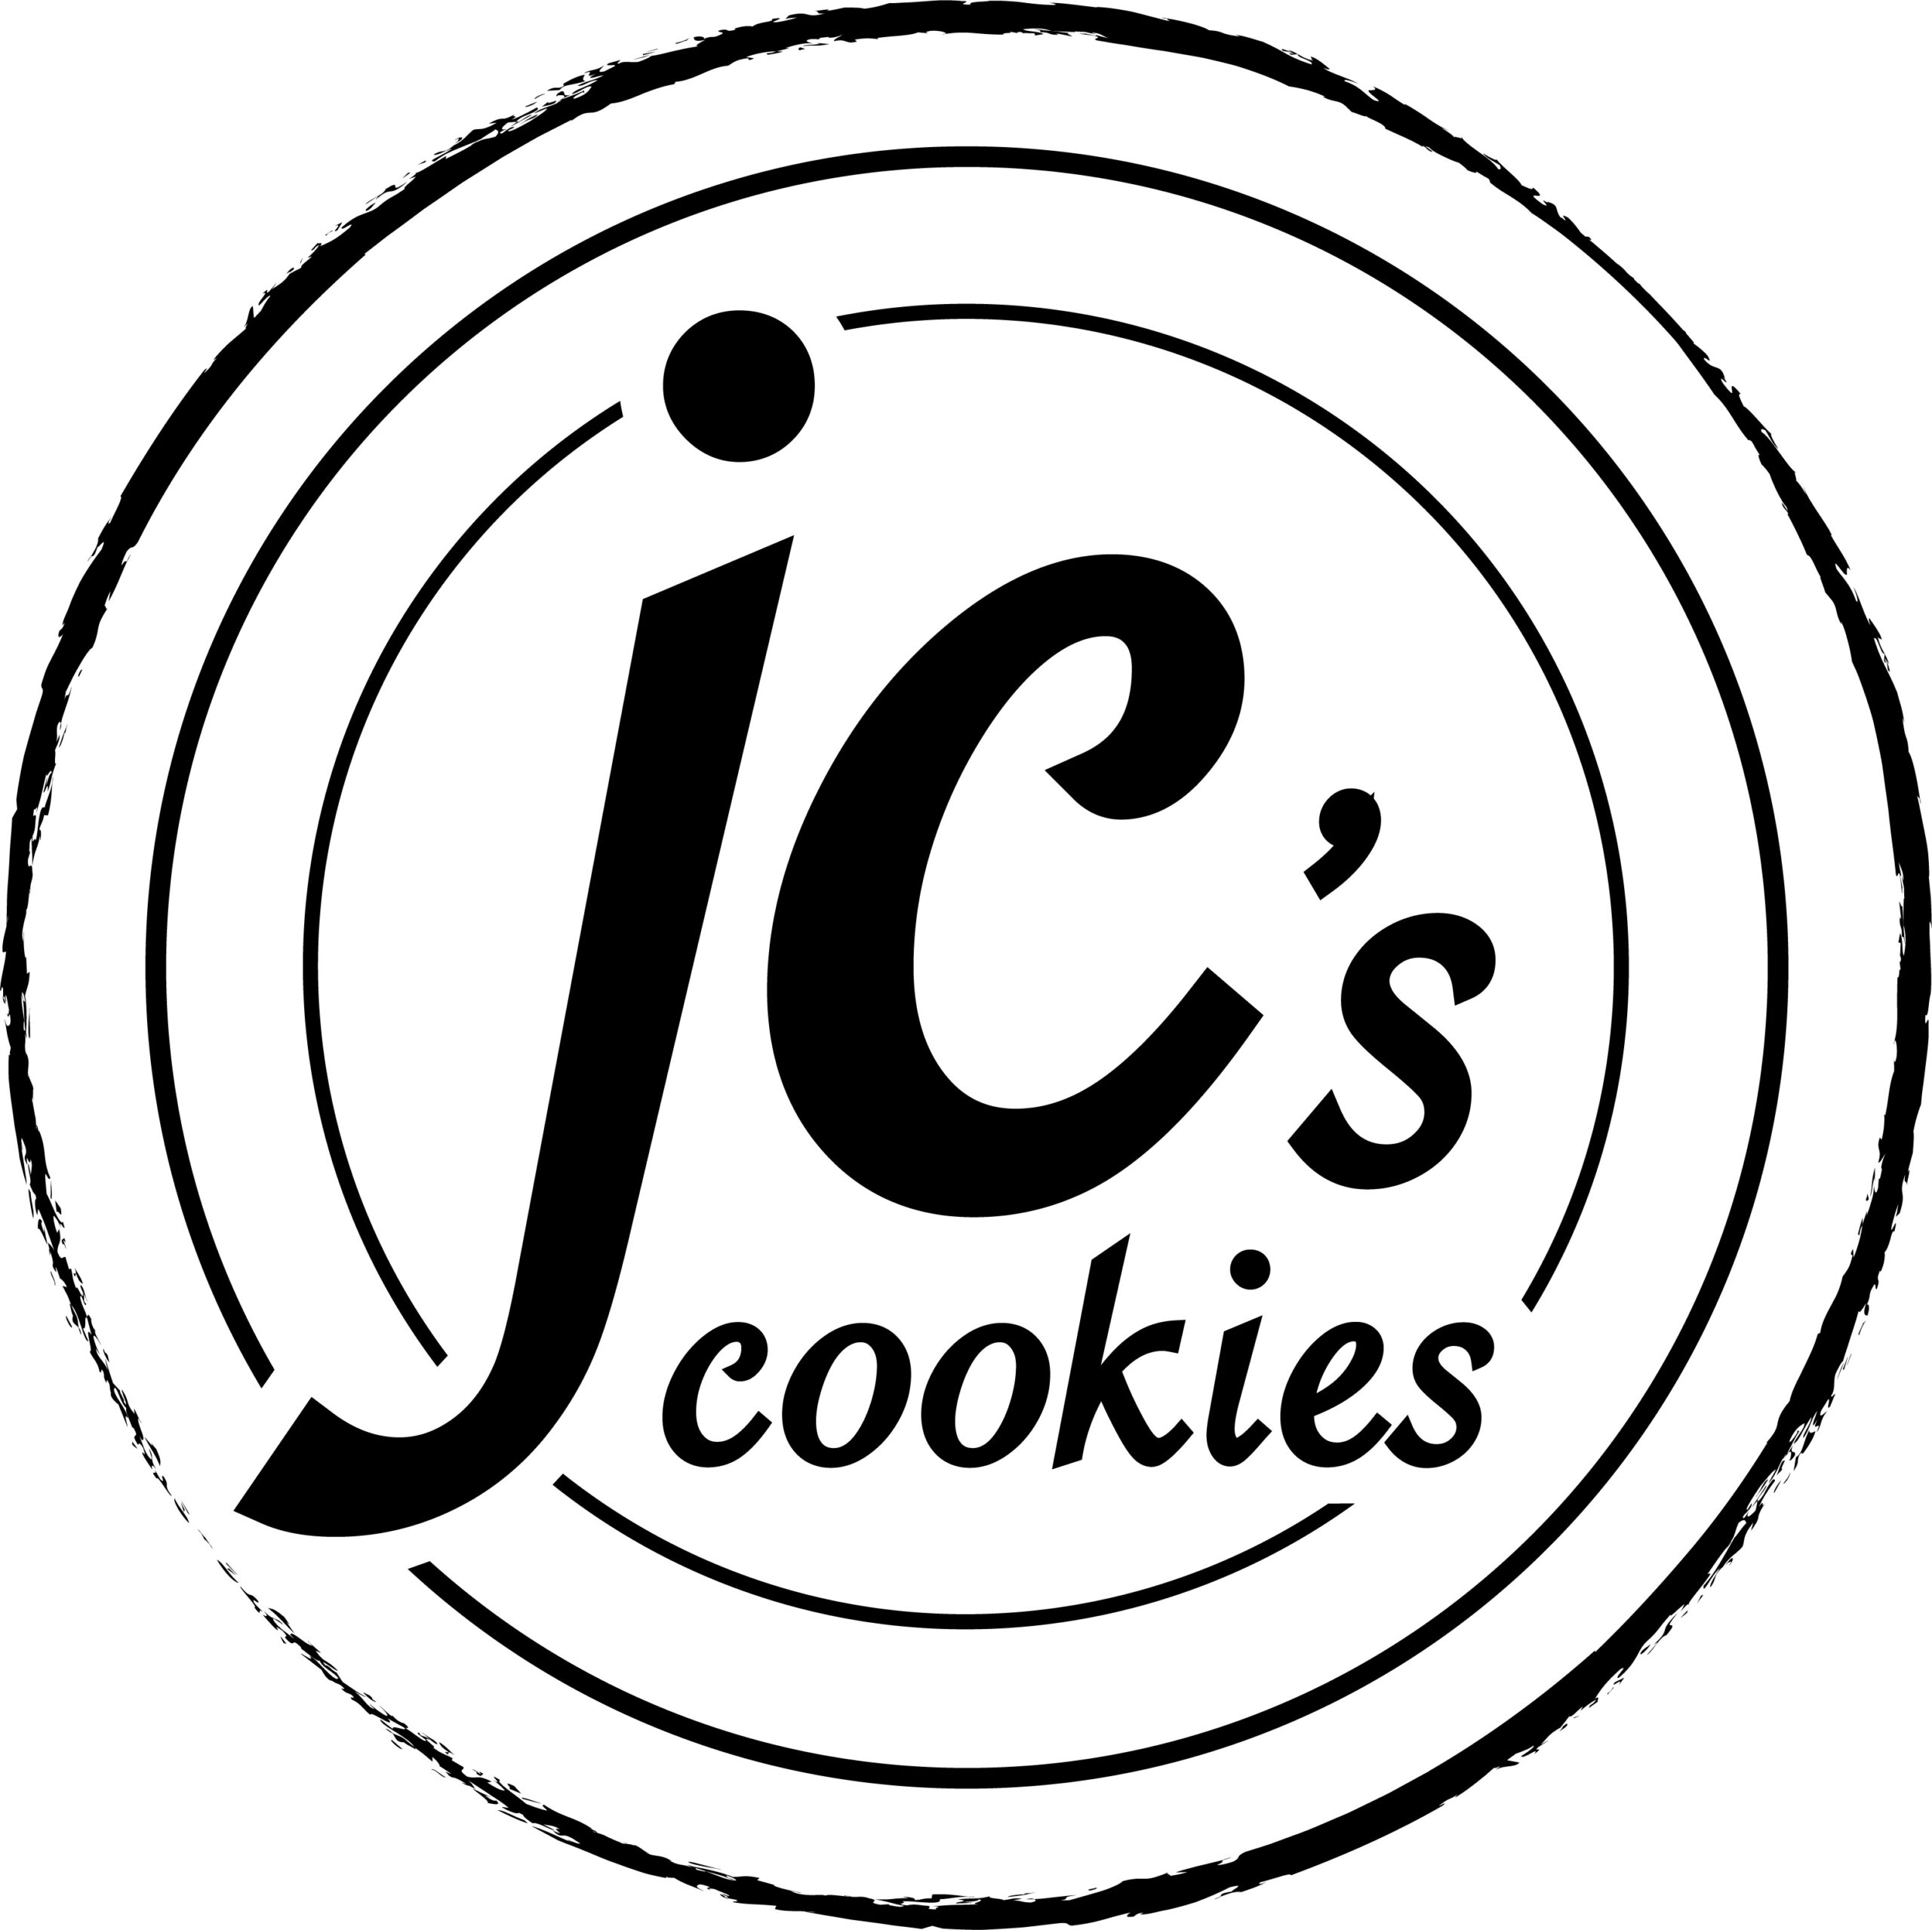 JC's Cookies